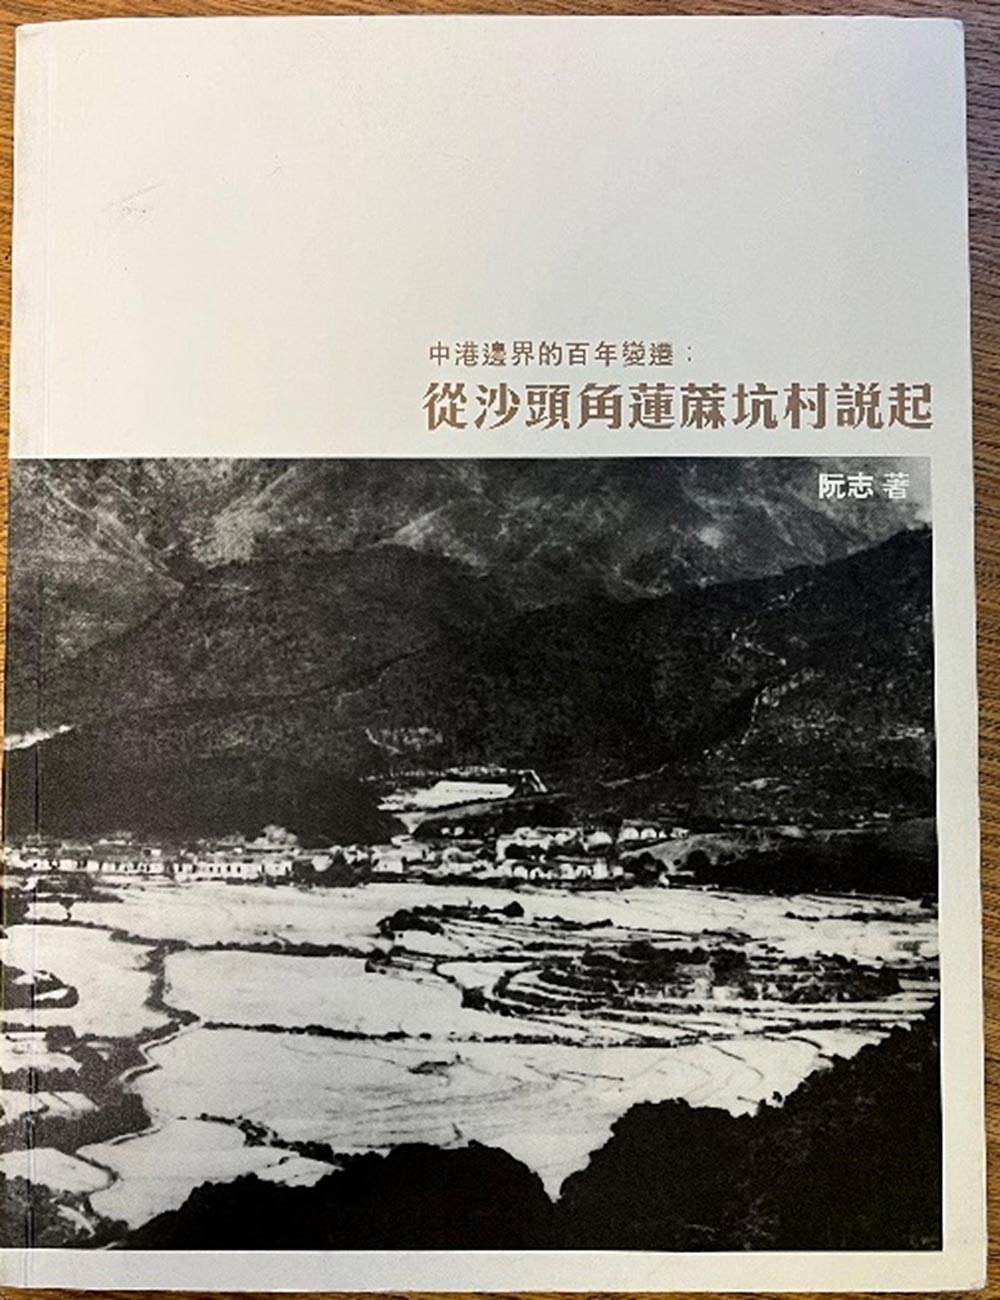 2012 Lin Ma Hang village history book